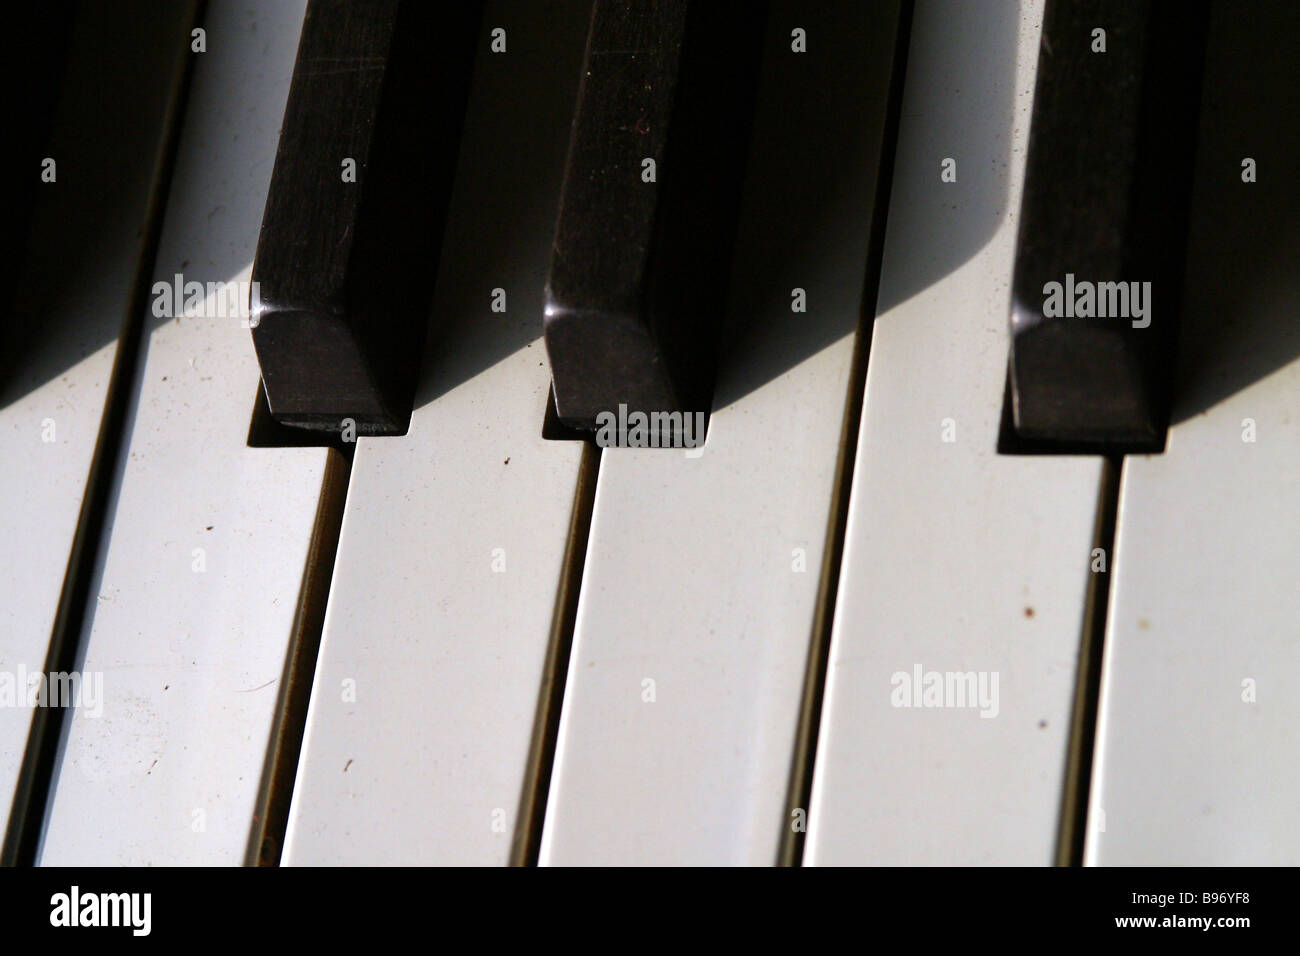 Ebenholz und Elfenbein Tasten auf einem Klavier-Tastatur Stockfotografie -  Alamy